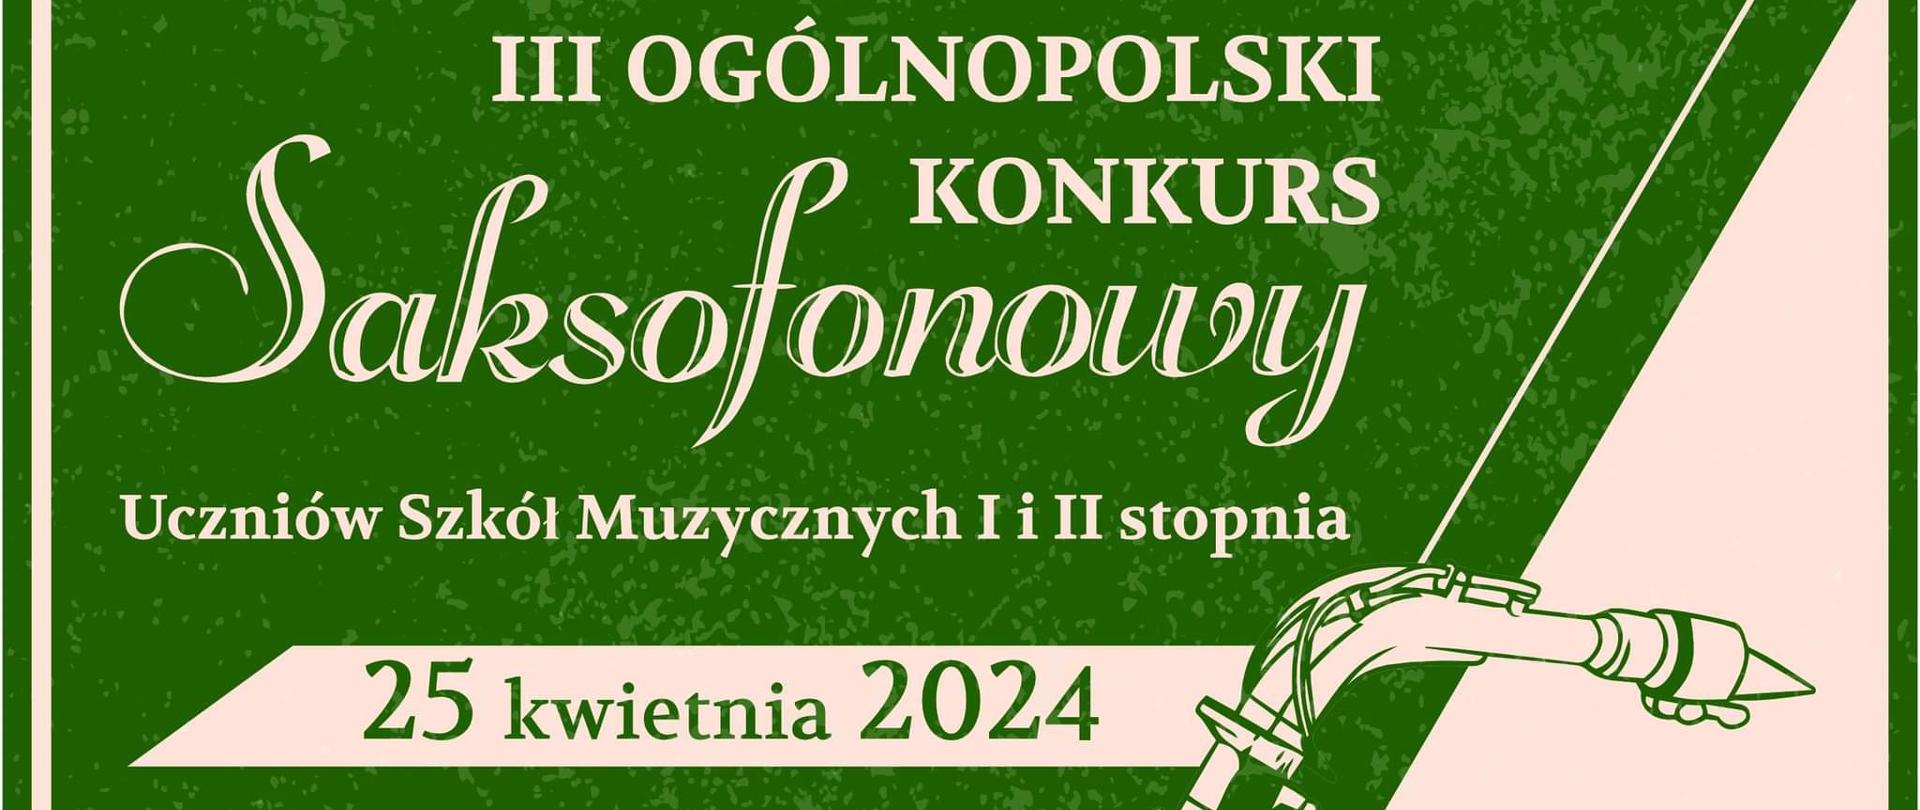 III Ogólnopolski Konkurs Saksofonowy Uczniów Szkół Muzycznych I i II stopnia - plakat